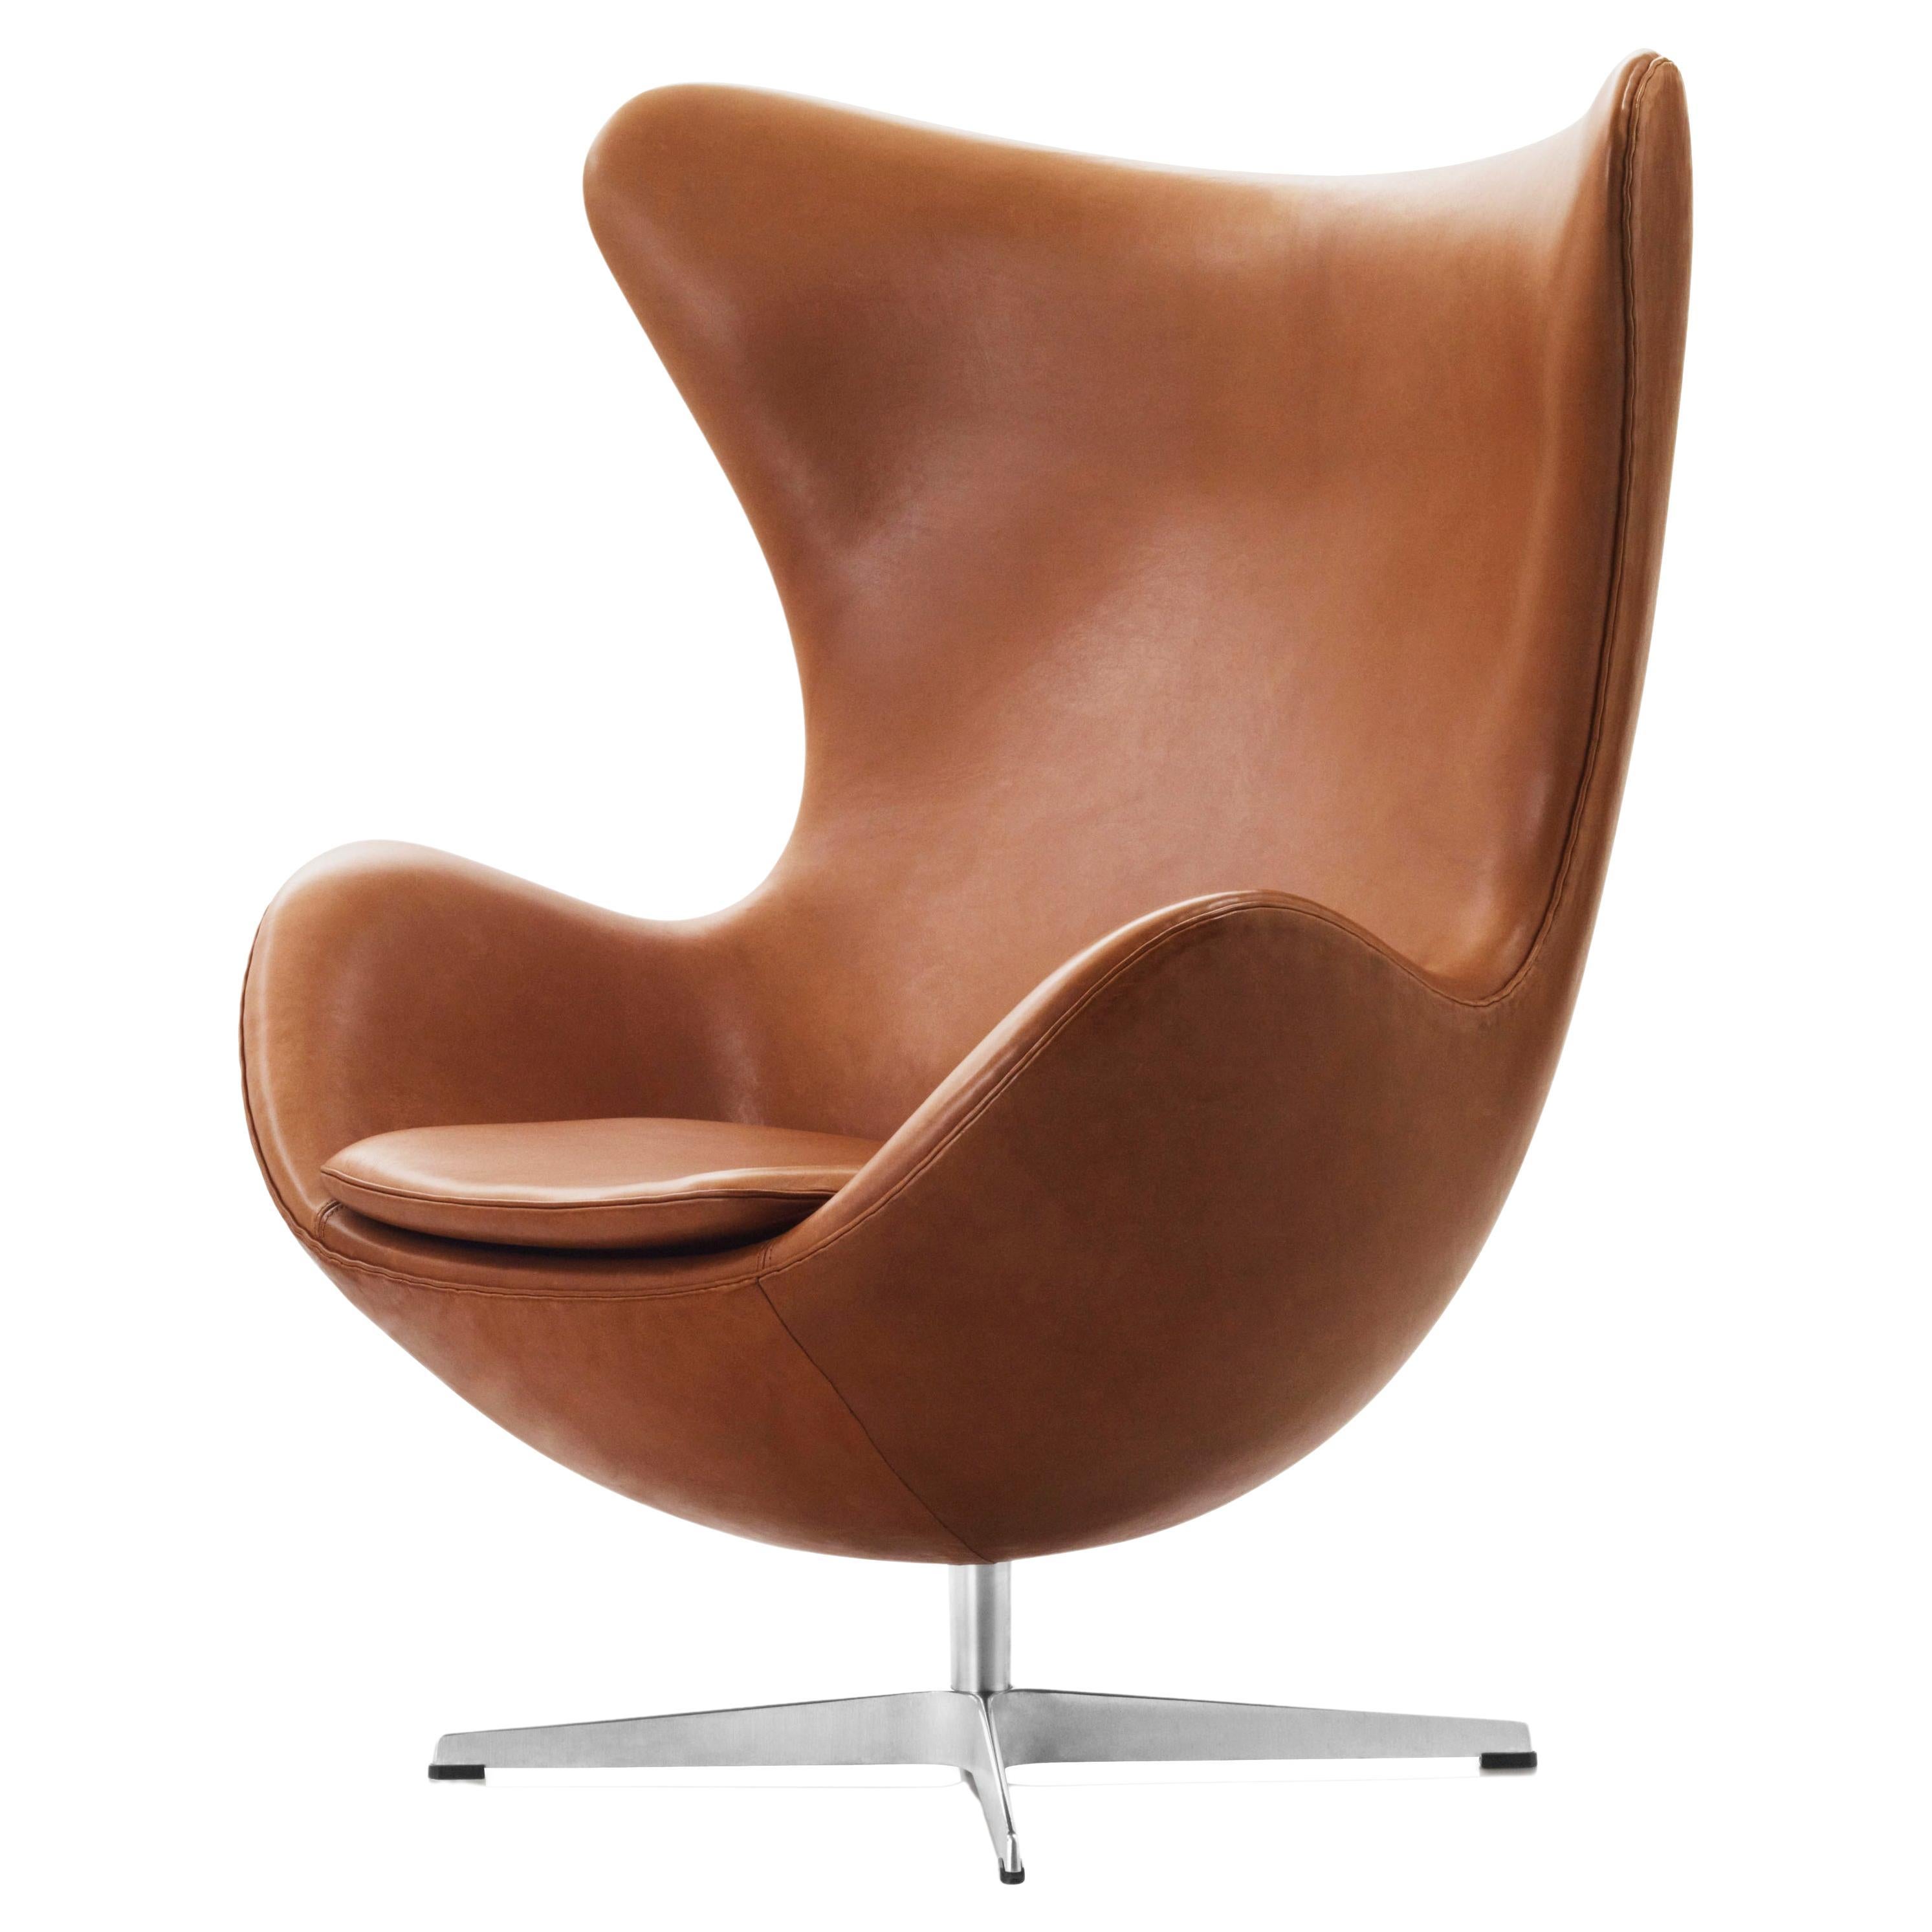 Arne Jacobsen 'Egg' Chair for Fritz Hansen in Leather Upholstery (Cat. 5)